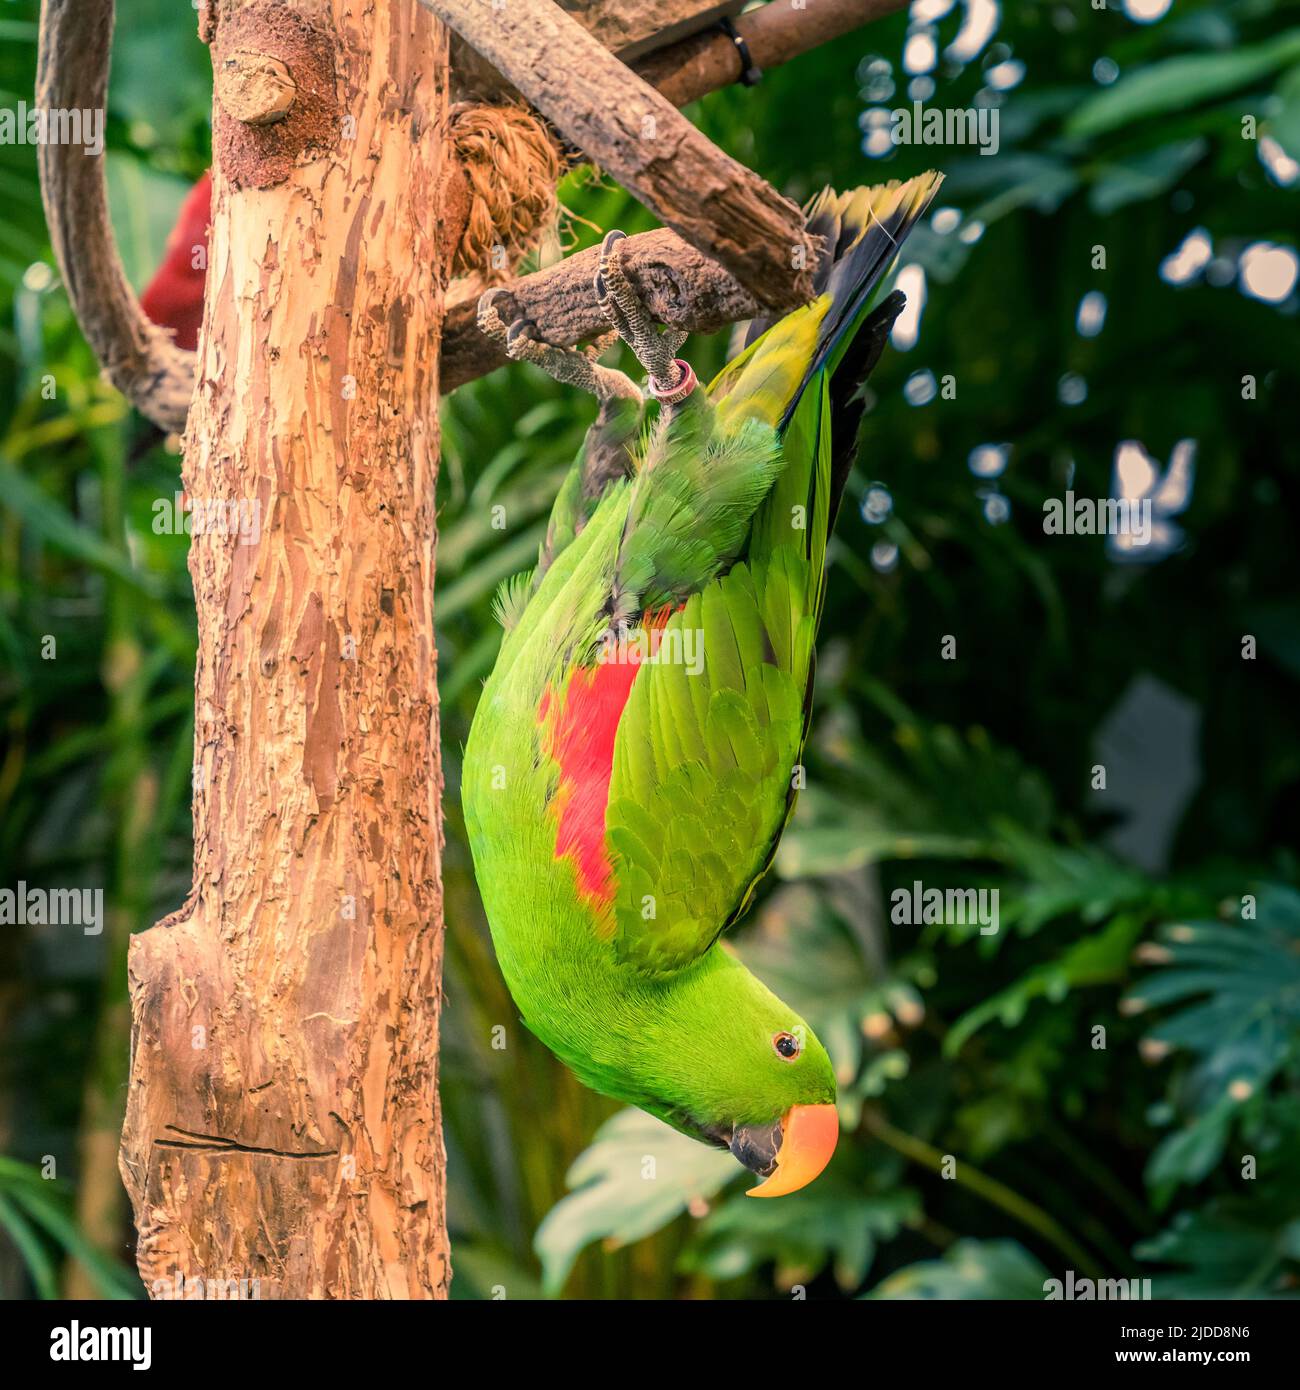 Portrait of Eclectus roratus parrot in bird sanctuary Stock Photo